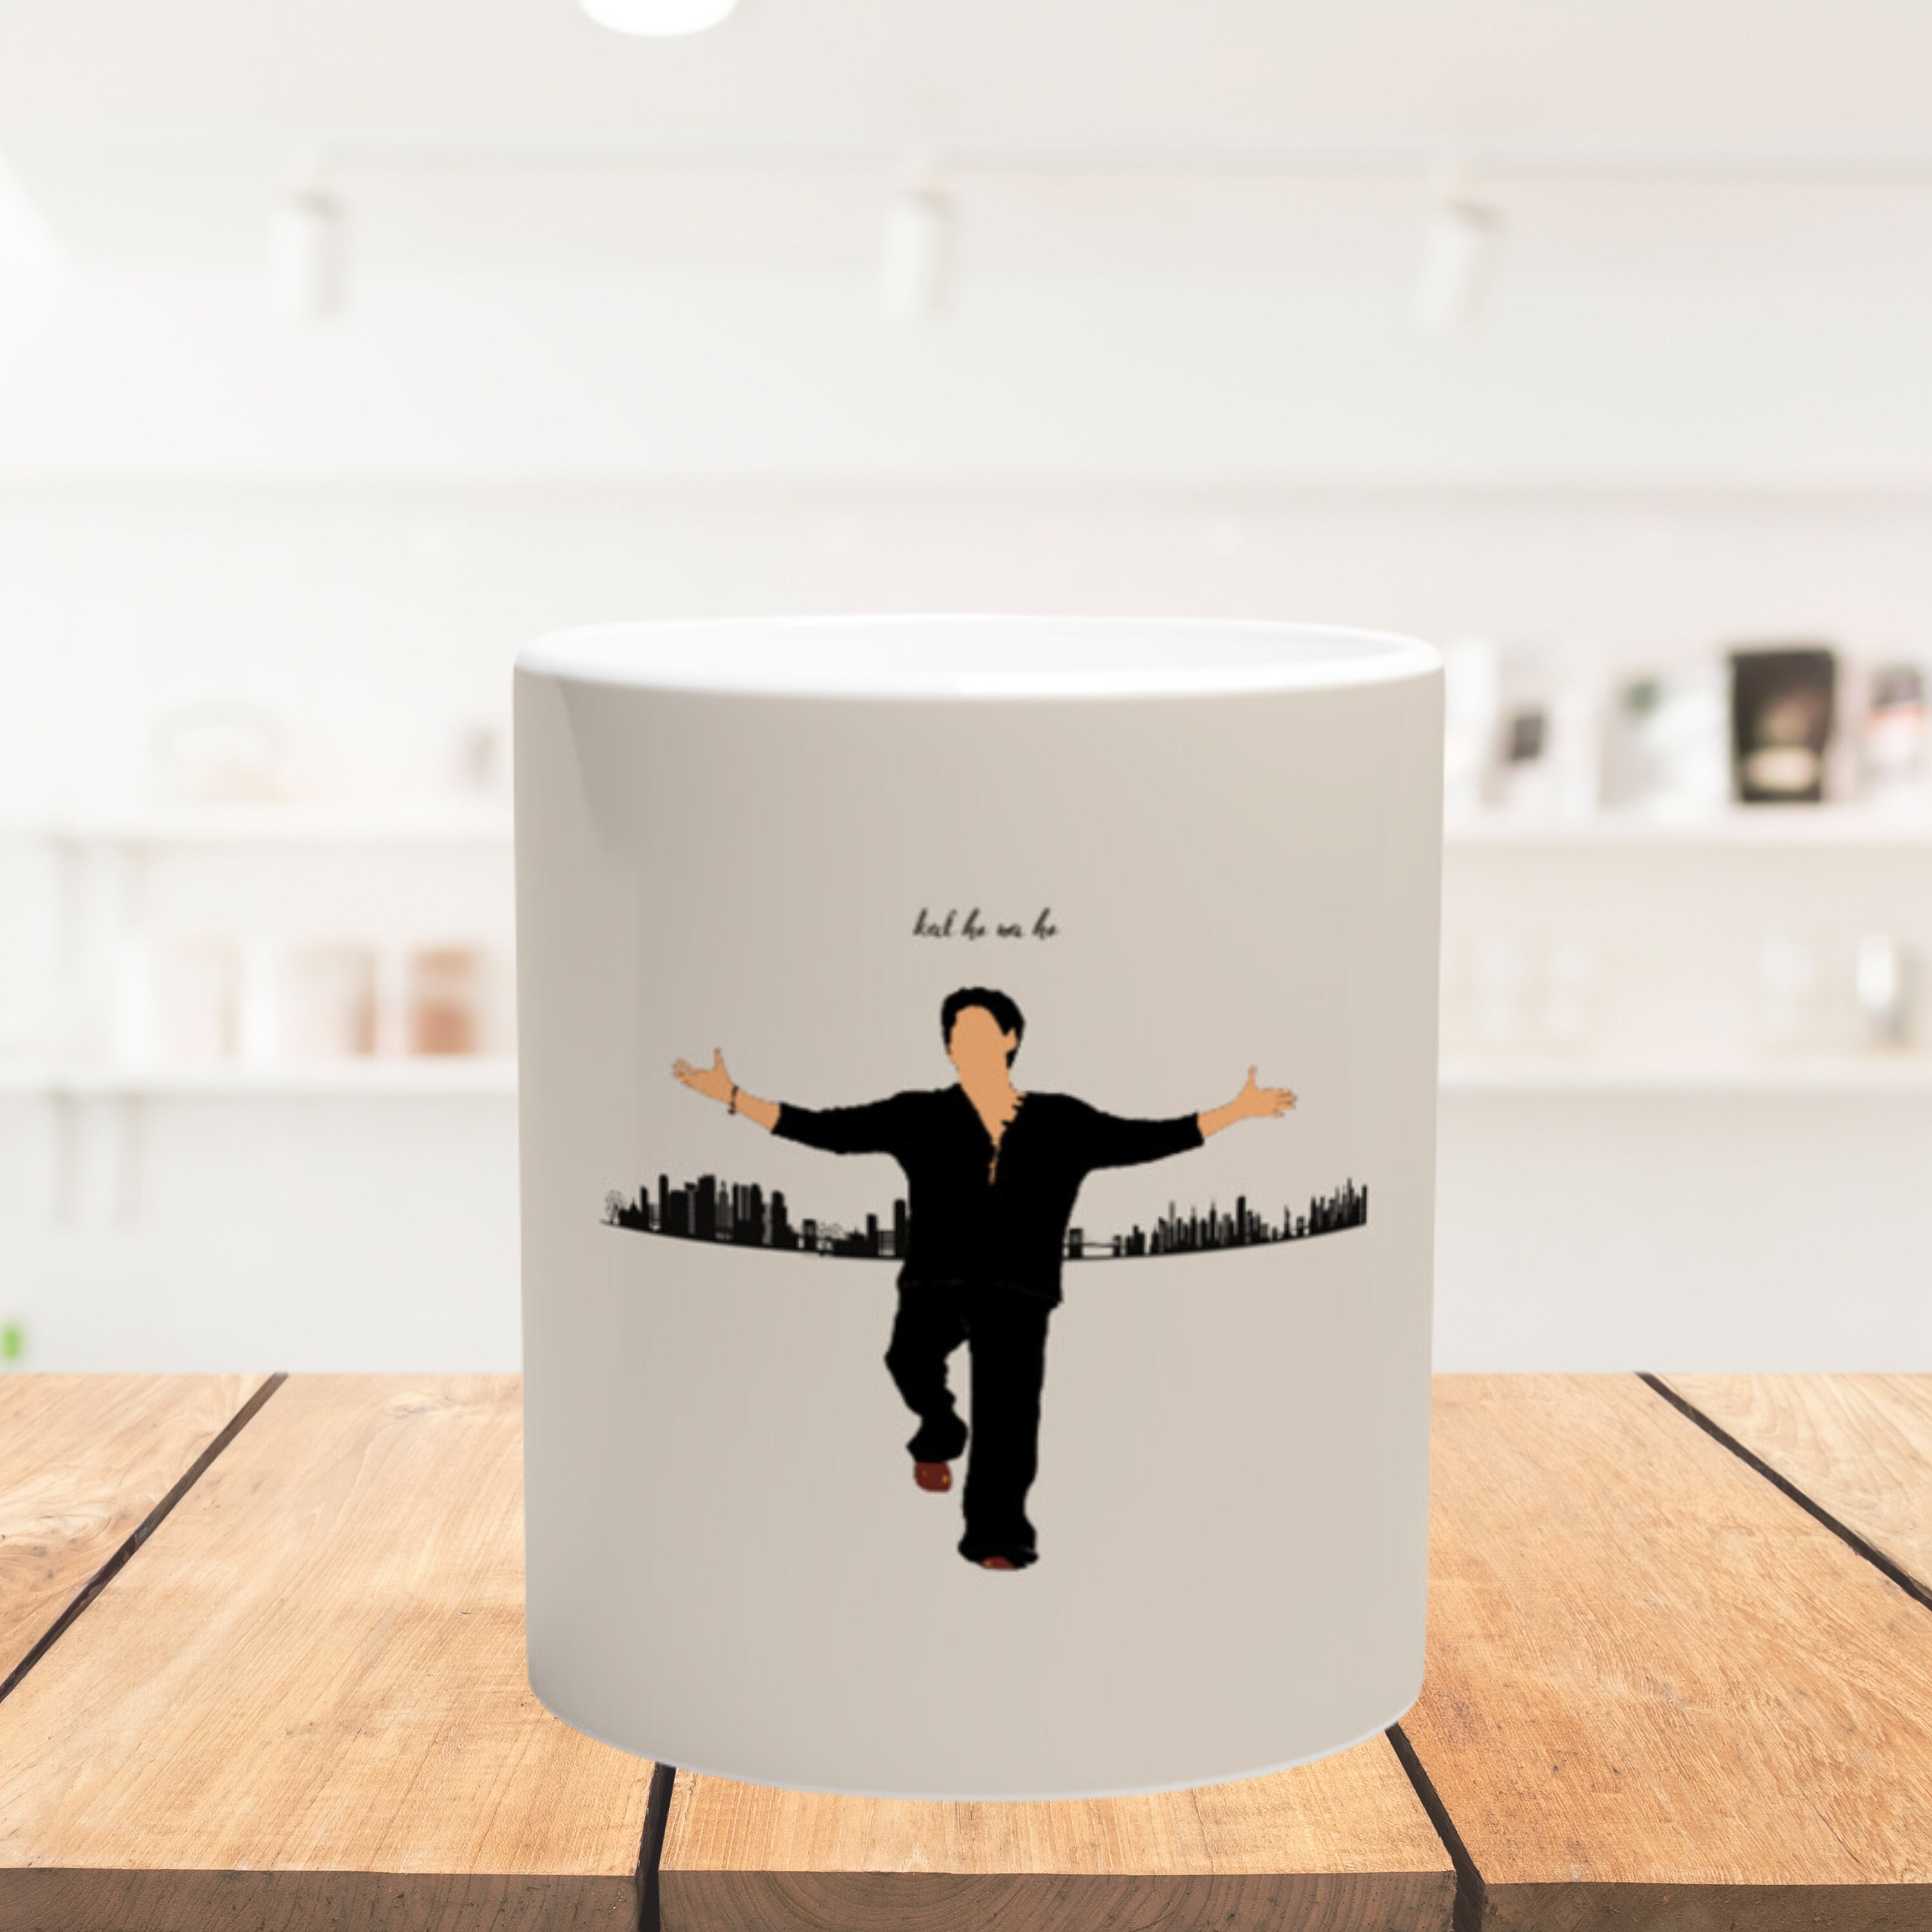 Shah Rukh Khan Cute Mug Gift, Customized Coffee/tea Mug, Shah Rukh Khan  Ceramic Mug, Cool Funny Shah Rukh Khan Mug Gift Idea Handmade in USA 